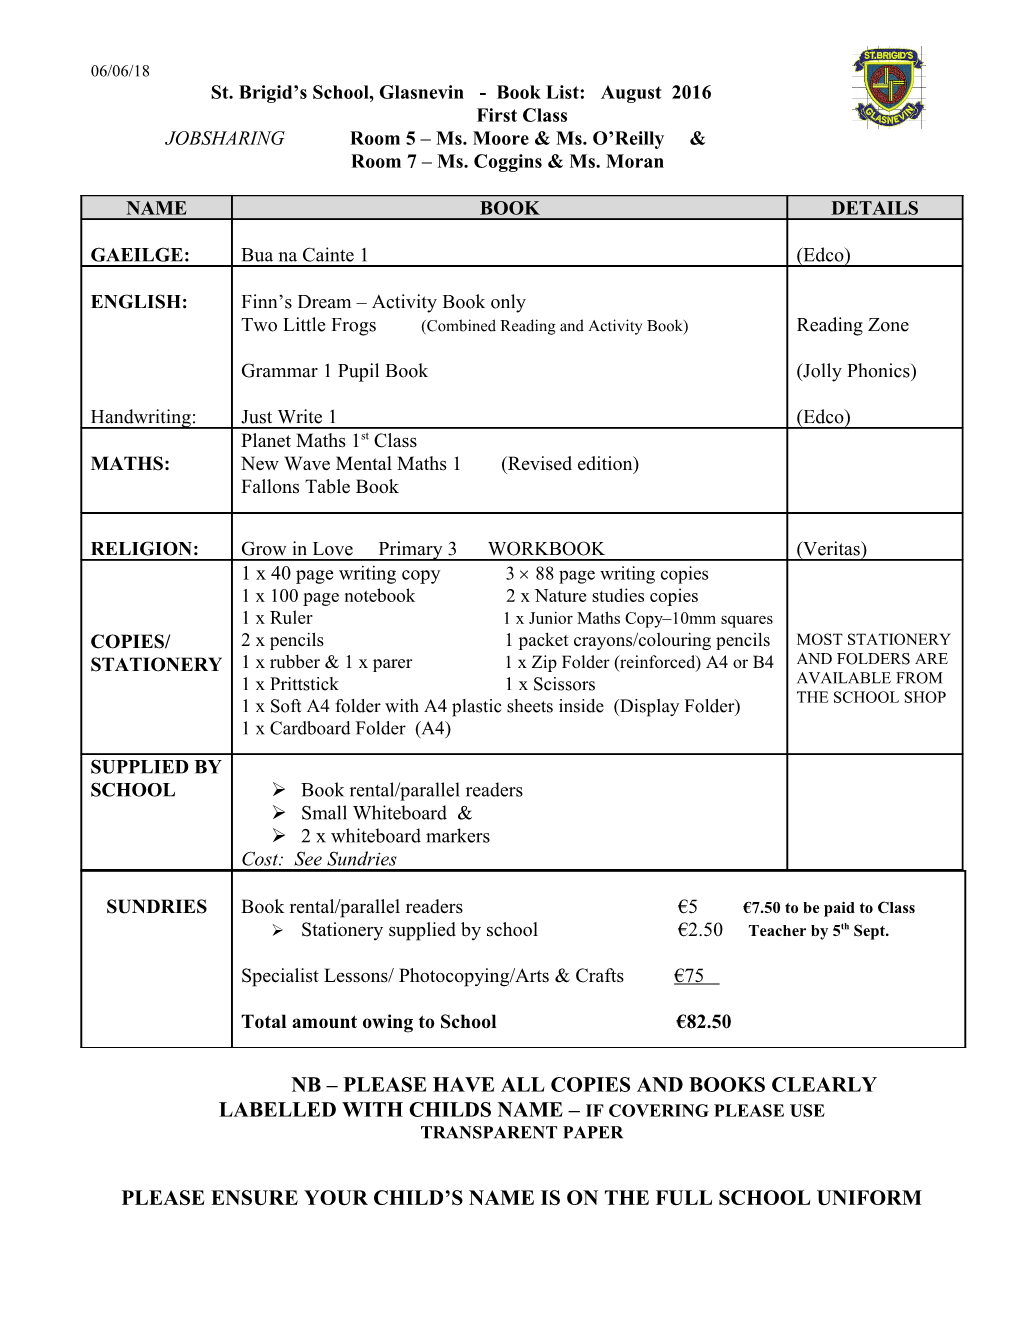 Book List for Sixth Class September 2000